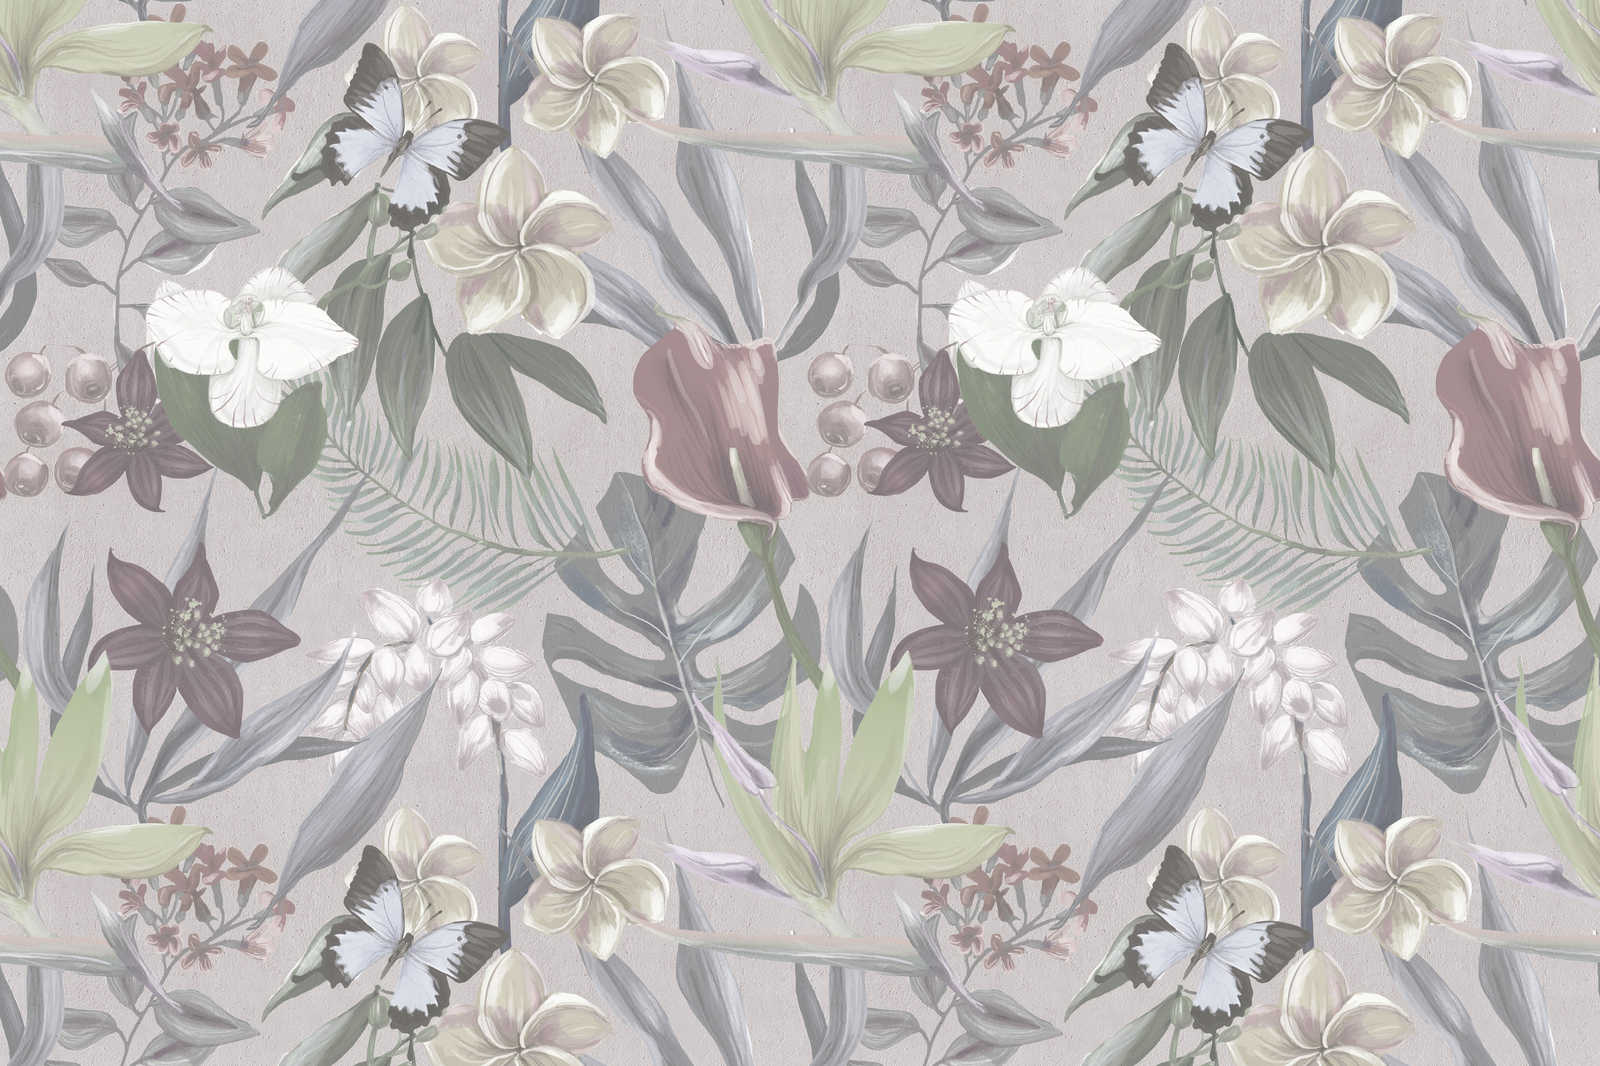             Jungle florale dessinée sur toile | gris, blanc - 1,20 m x 0,80 m
        